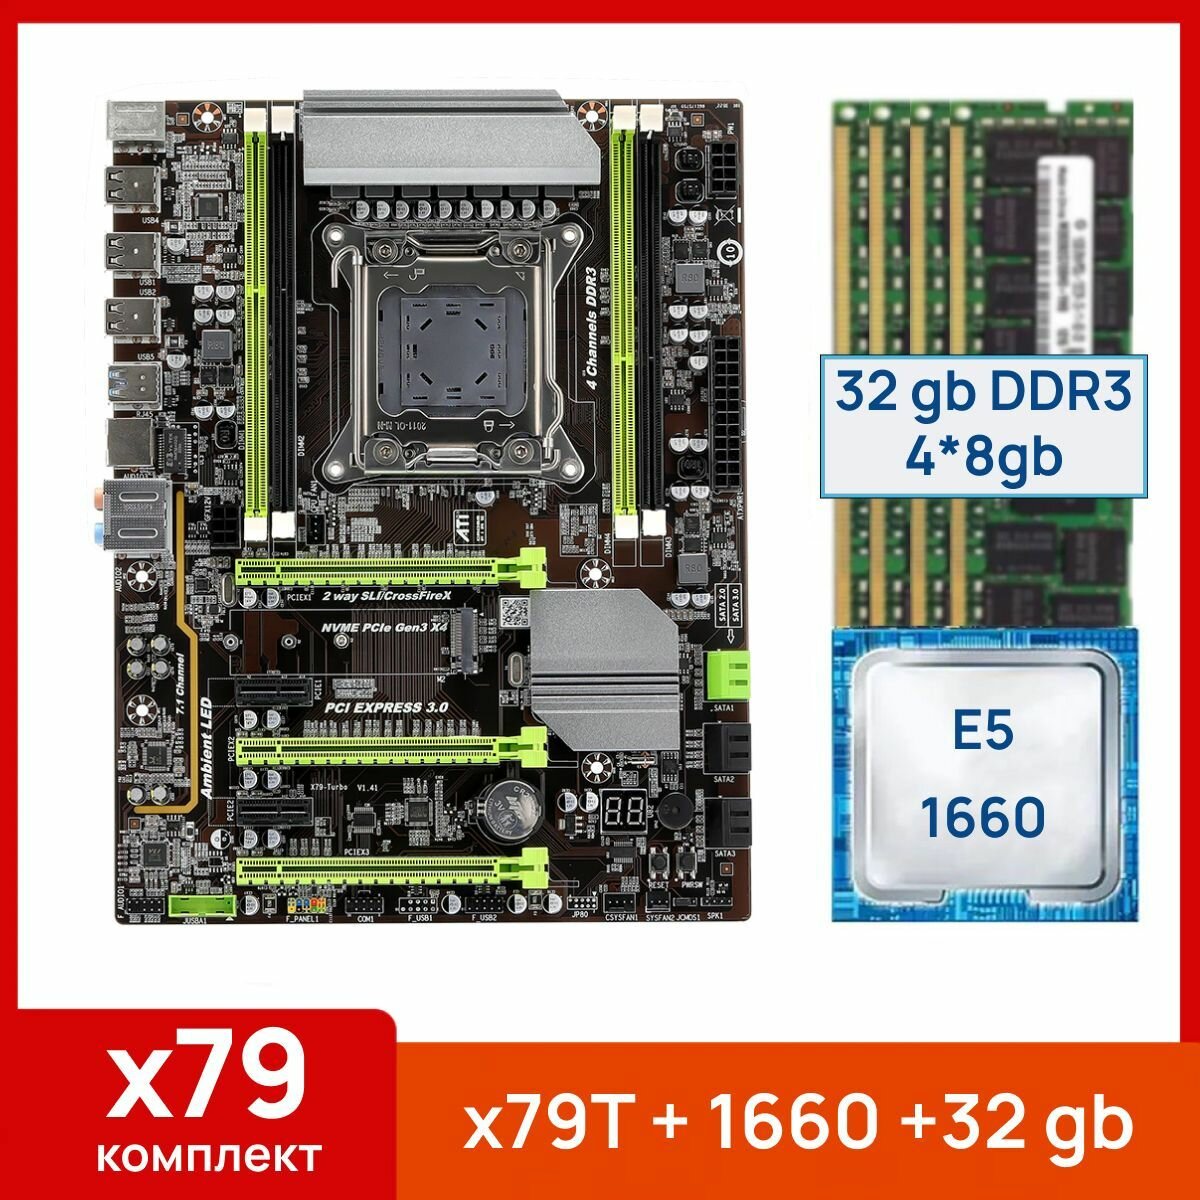 Комплект: Atermiter x79-Turbo + Xeon E5 1660 + 32 gb(4x8gb) DDR3 ecc reg